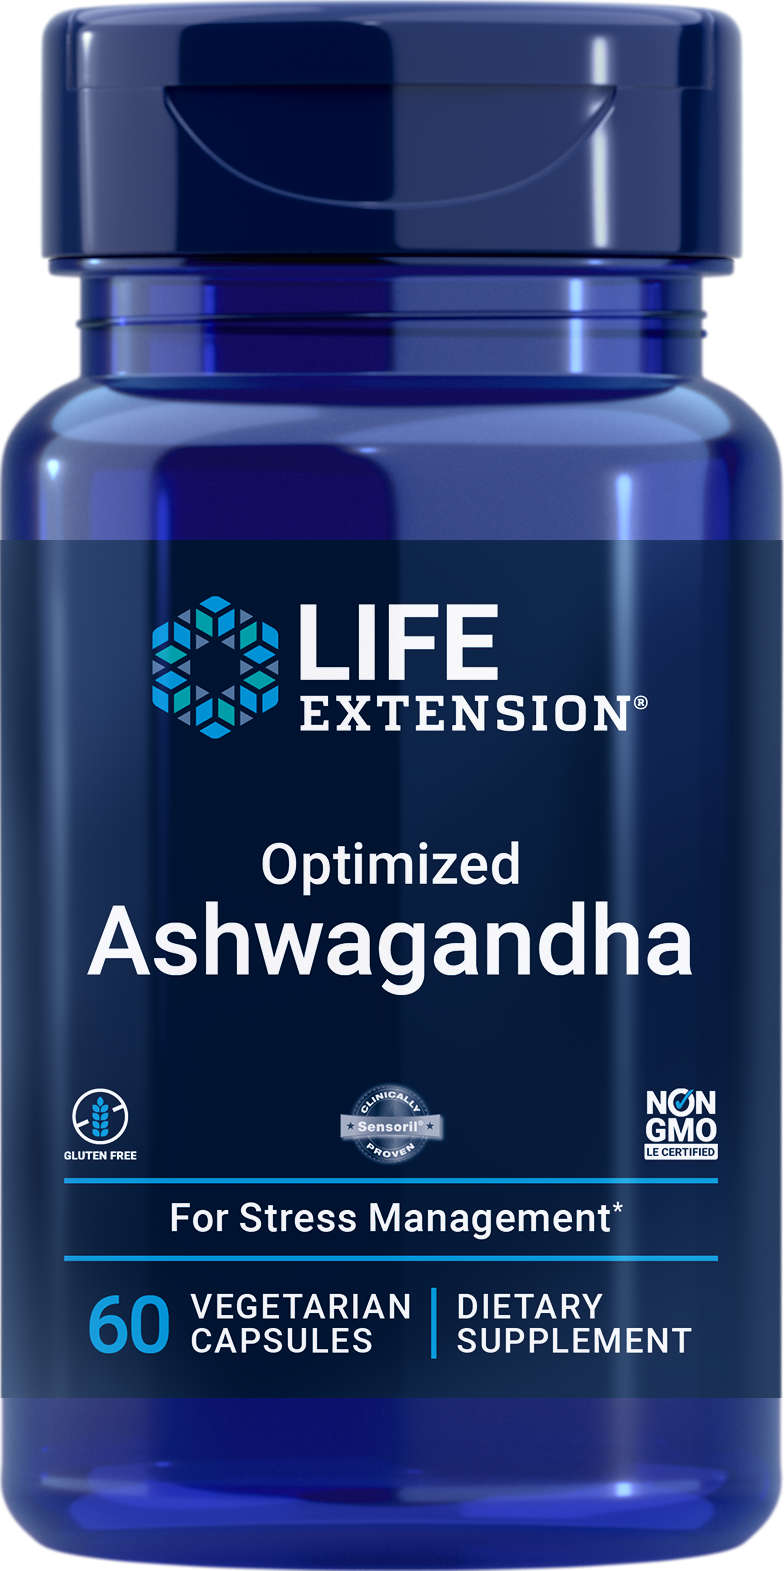 Optimized Ashwagandha Extract